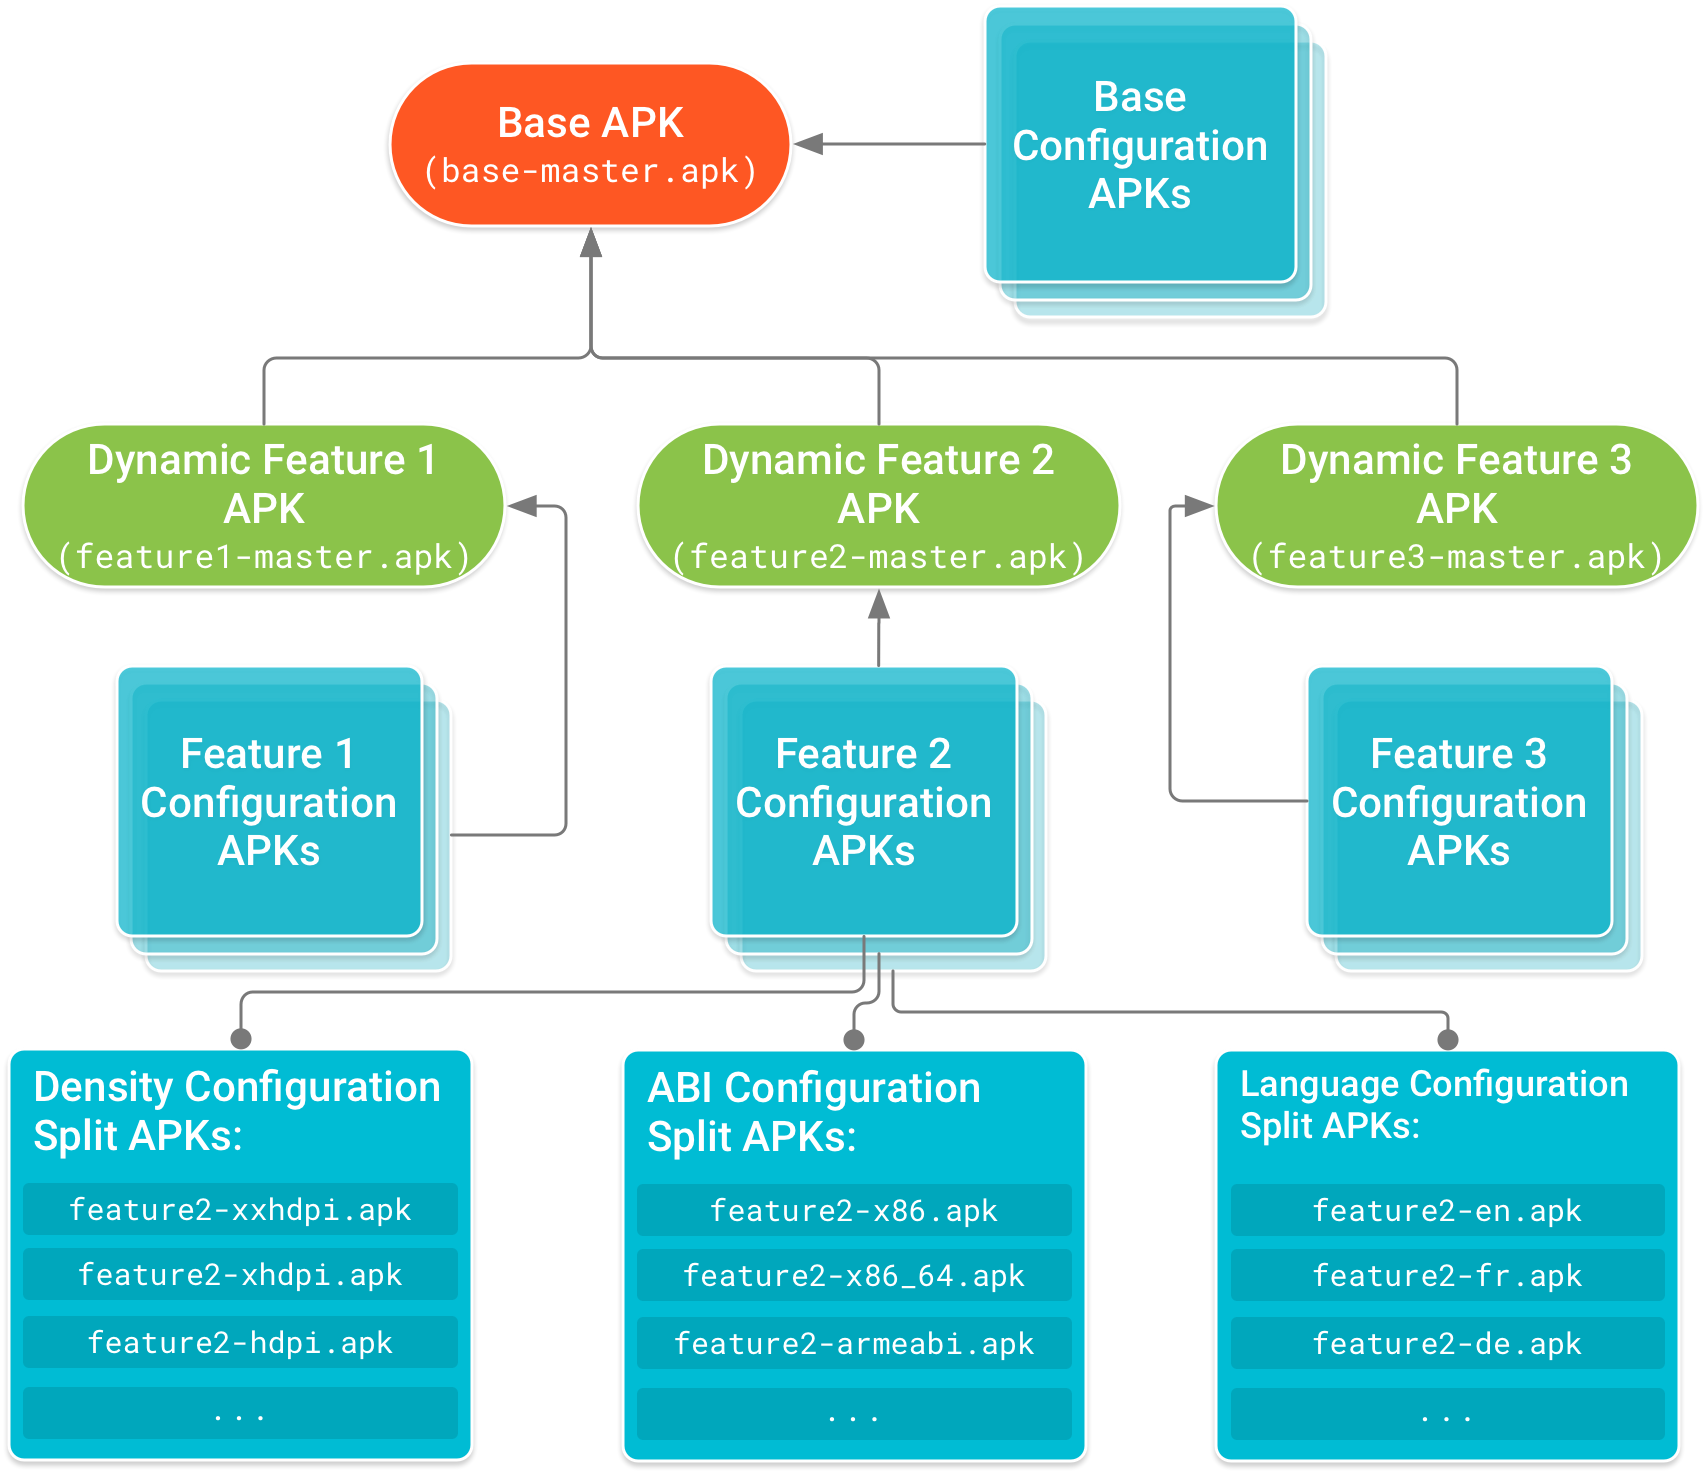 Tệp APK cơ sở nằm ở ngọn cây, còn các tệp APK mô-đun tính năng thì phụ thuộc vào tệp APK cơ sở đó. Các tệp APK cấu hình bao gồm mã và tài nguyên về cấu hình thiết bị cho tệp APK cơ sở và mỗi tệp APK mô-đun tính năng, tạo thành các nút lá của cây phụ thuộc.